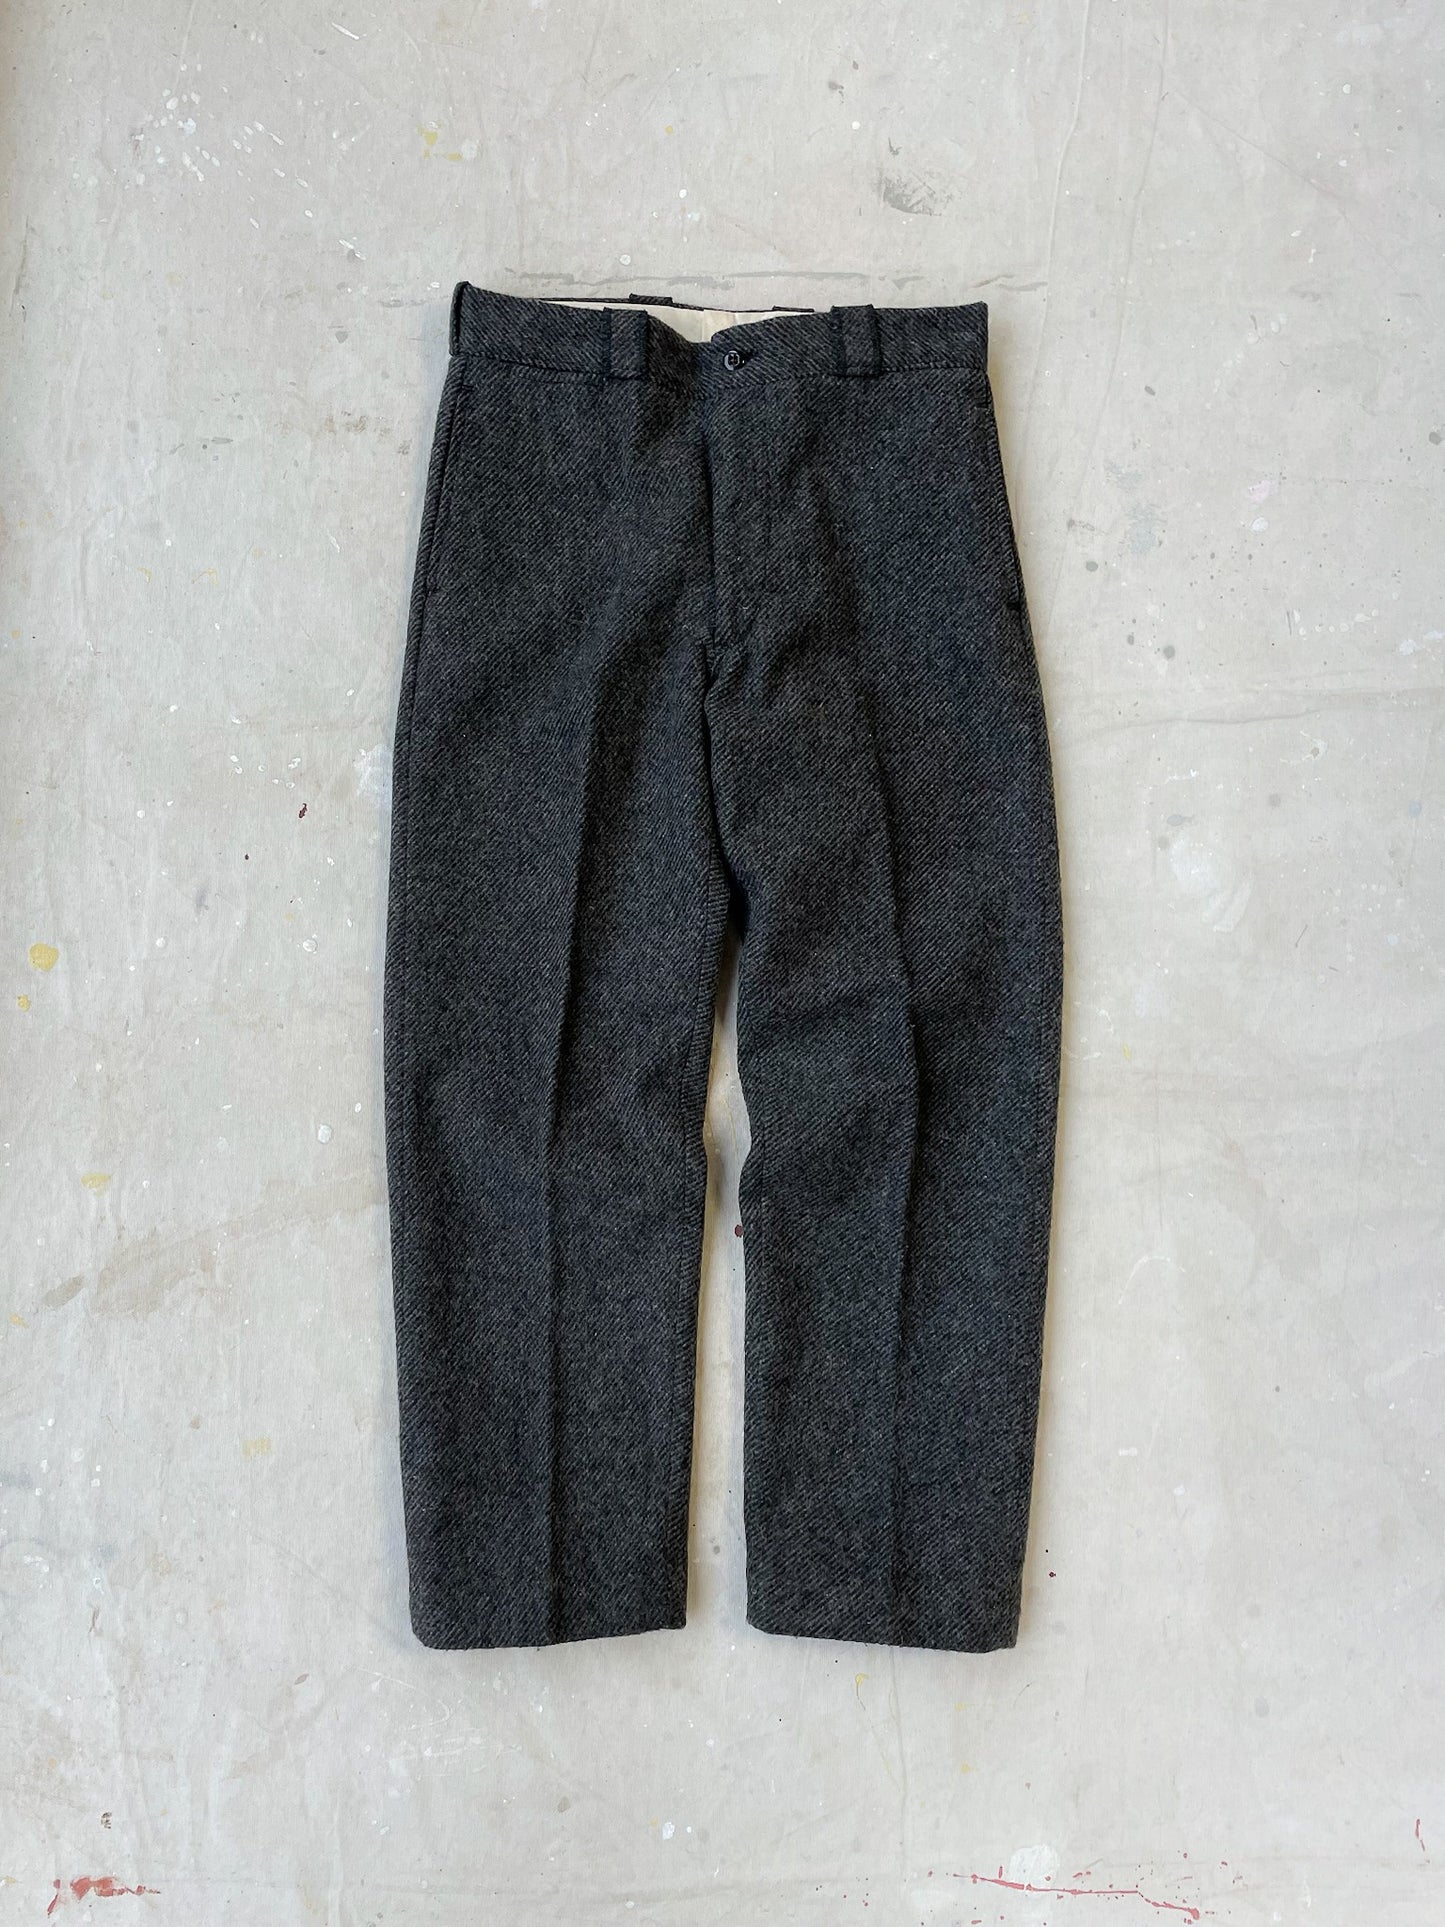 Tweed Pants—[33x31]